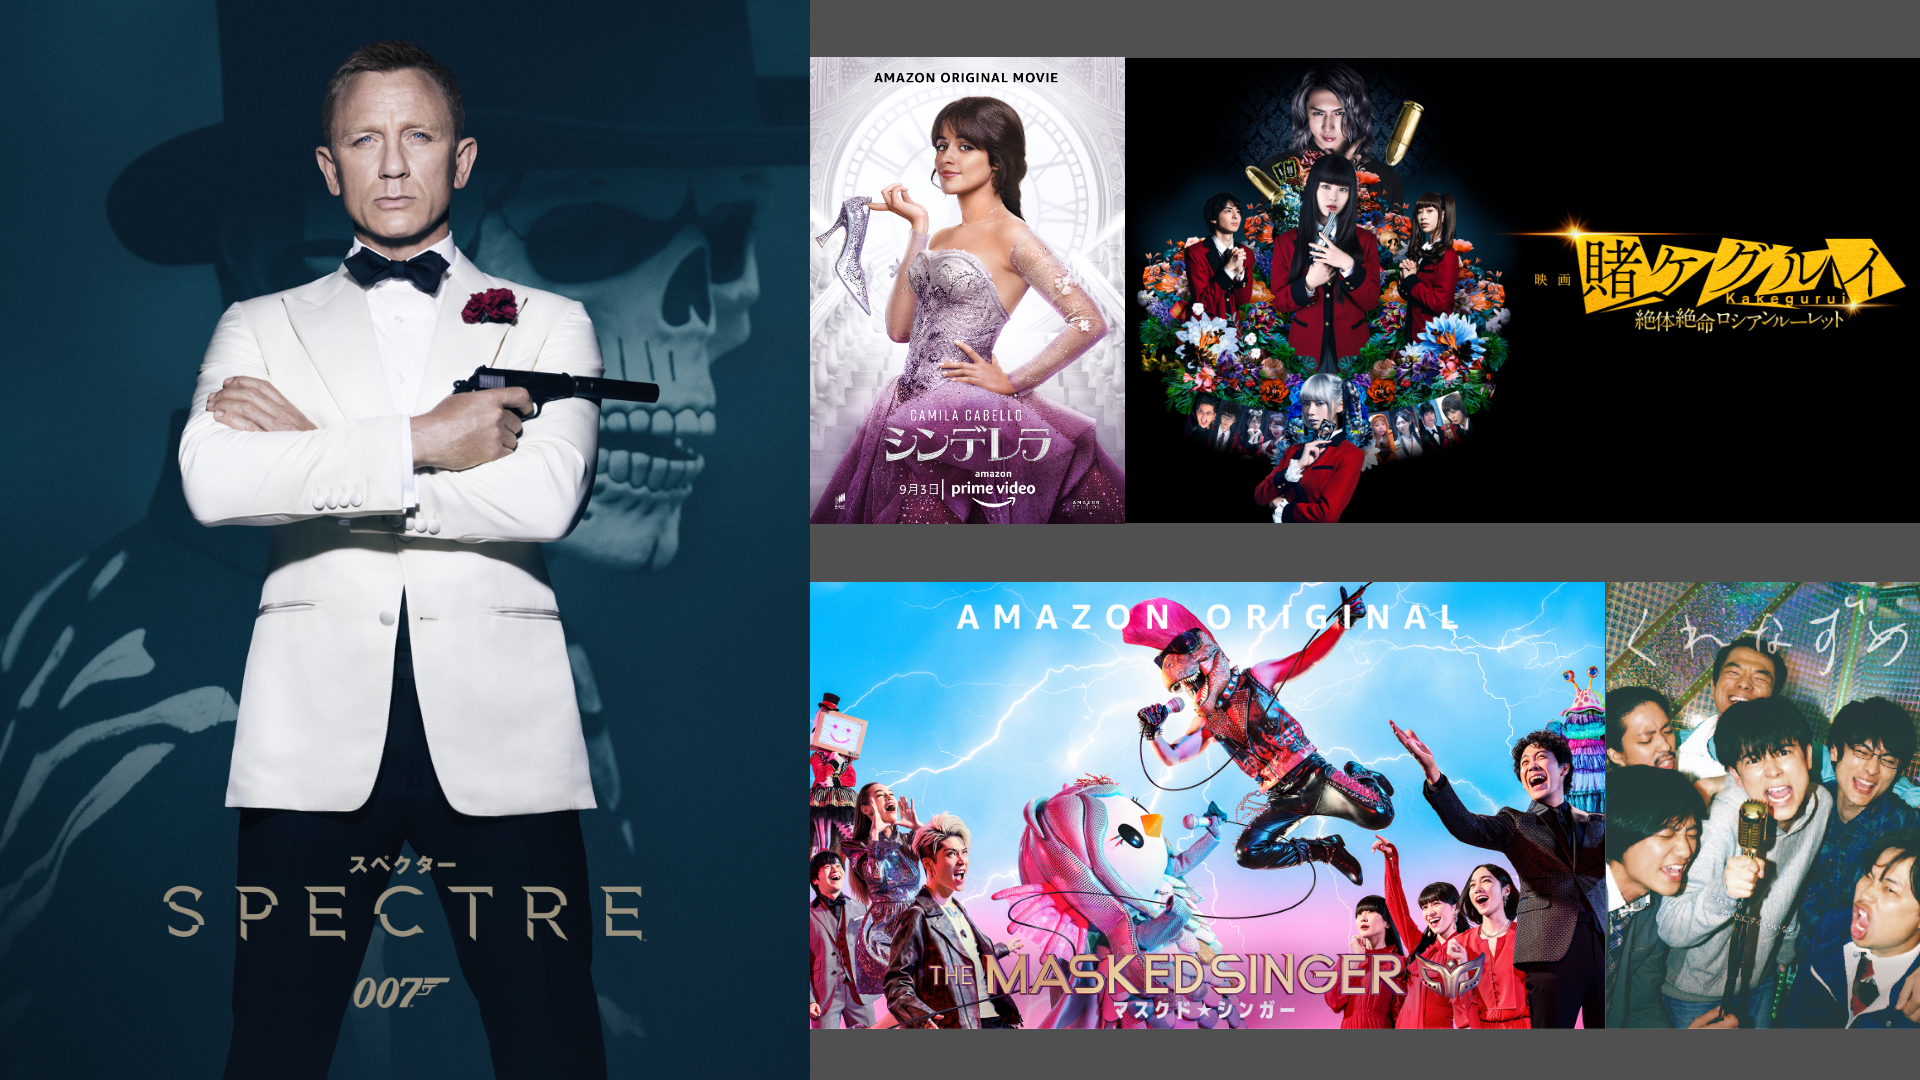 Amazonプライムビデオに9月の新作が追加 目玉は 007シリーズ 全24作品 6月に劇場公開されたばかりの邦画の人気作も Engadget 日本版